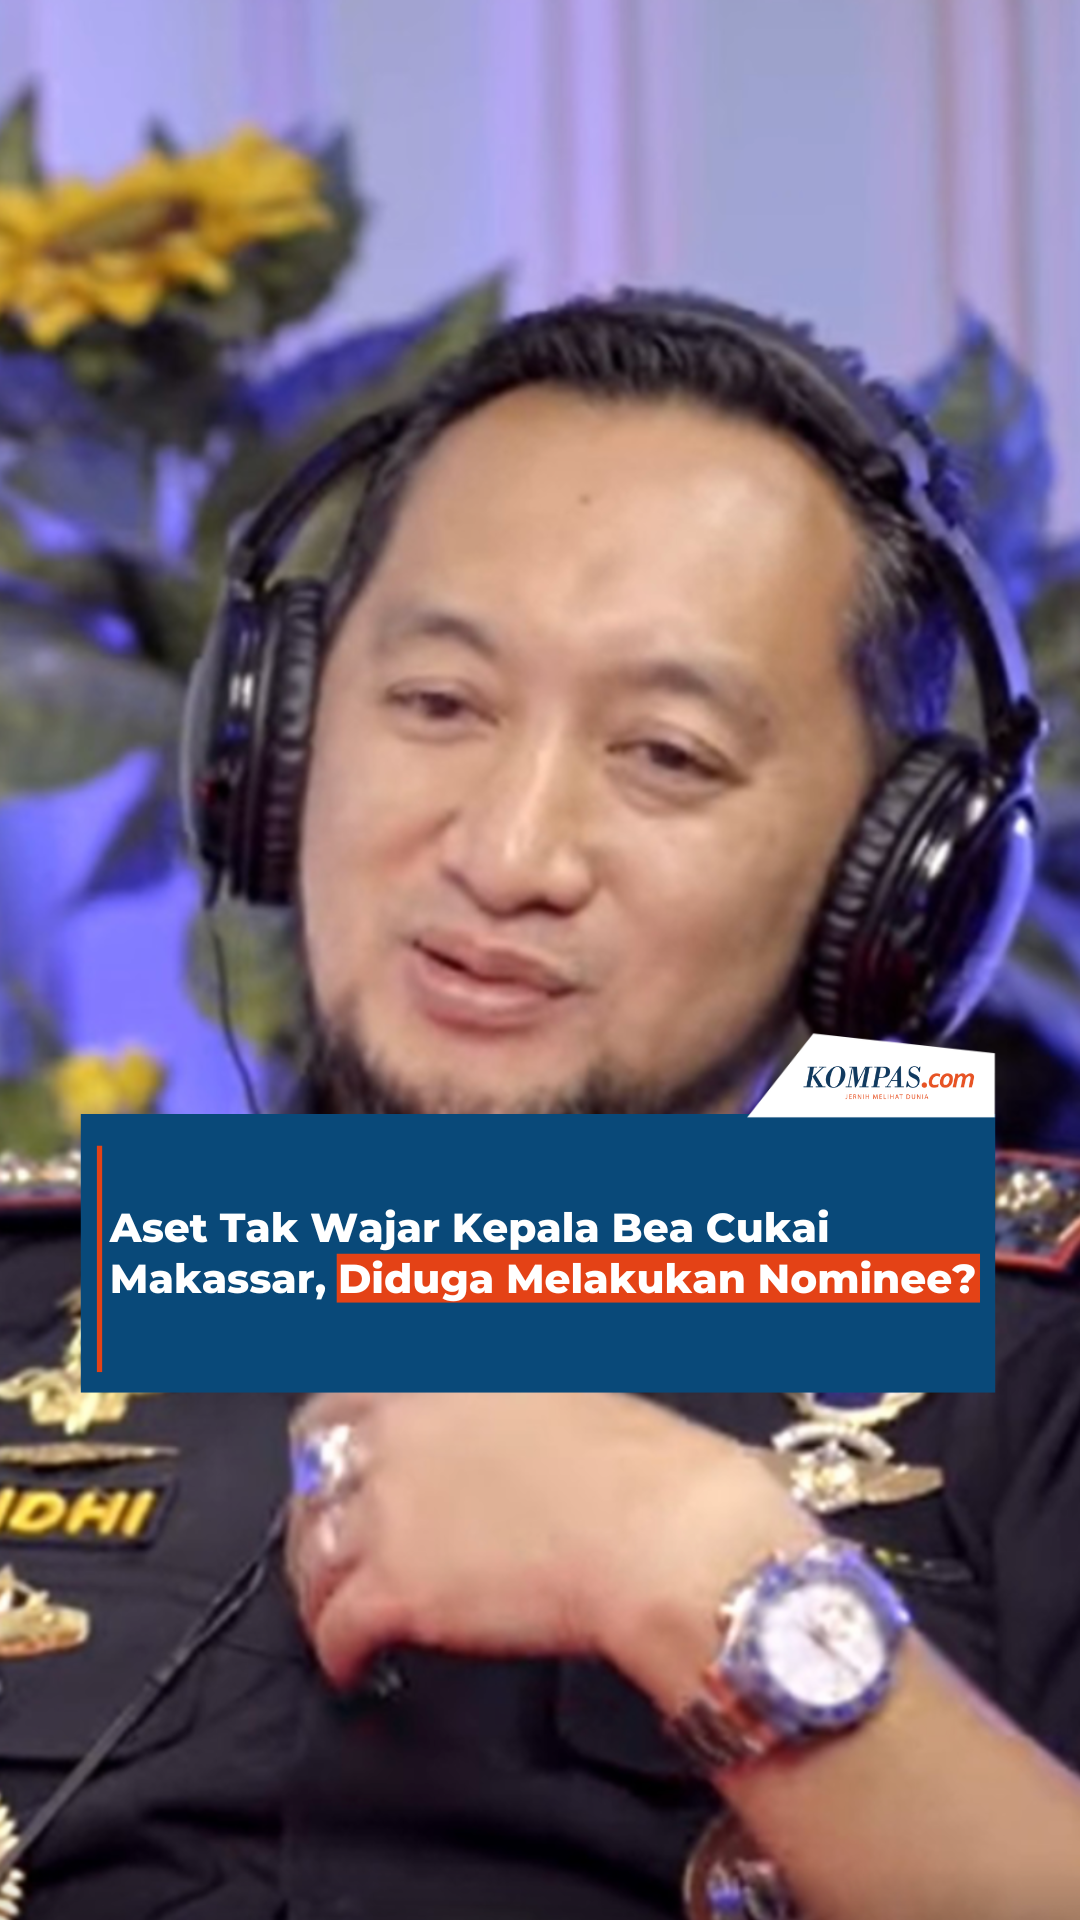 Aset Tak Wajar Kepala Bea Cukai Makassar, Diduga Melakukan Nominee?